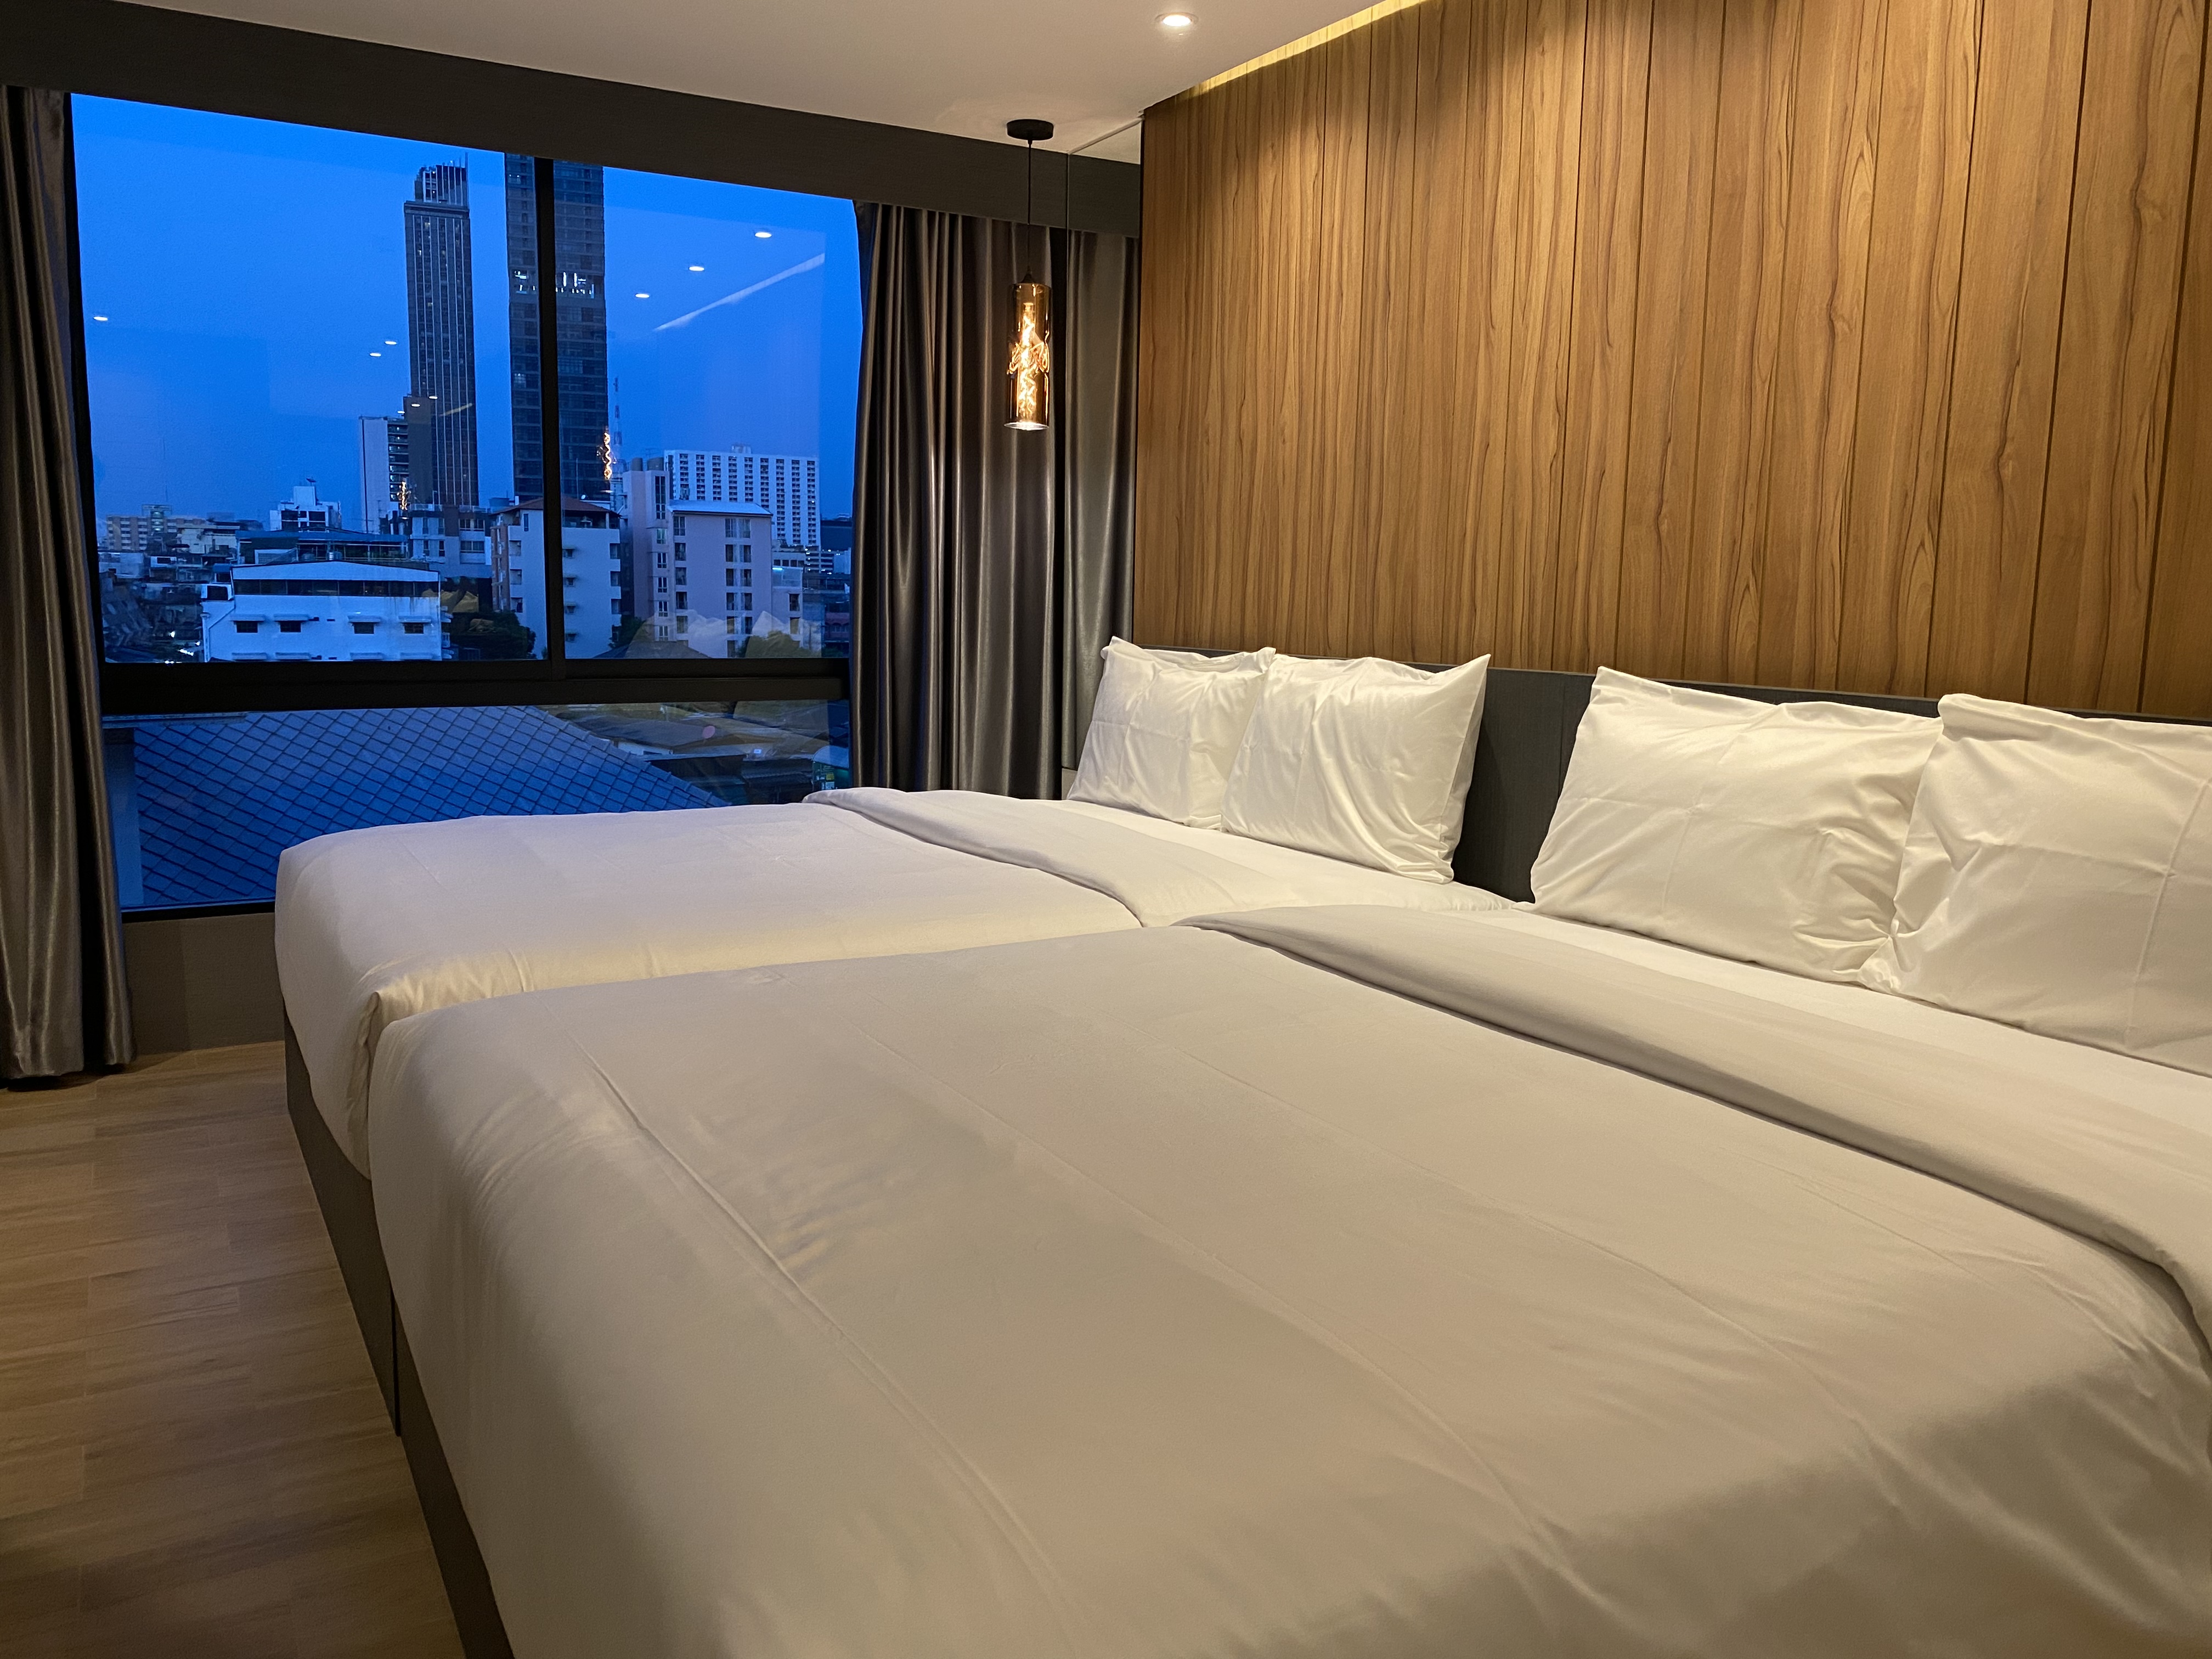 รีวิวโรงแรม เอสทรี สยาม กรุงเทพ - โปรโมชั่นโรงแรม 3 ดาวในกรุงเทพฯ | Trip.com